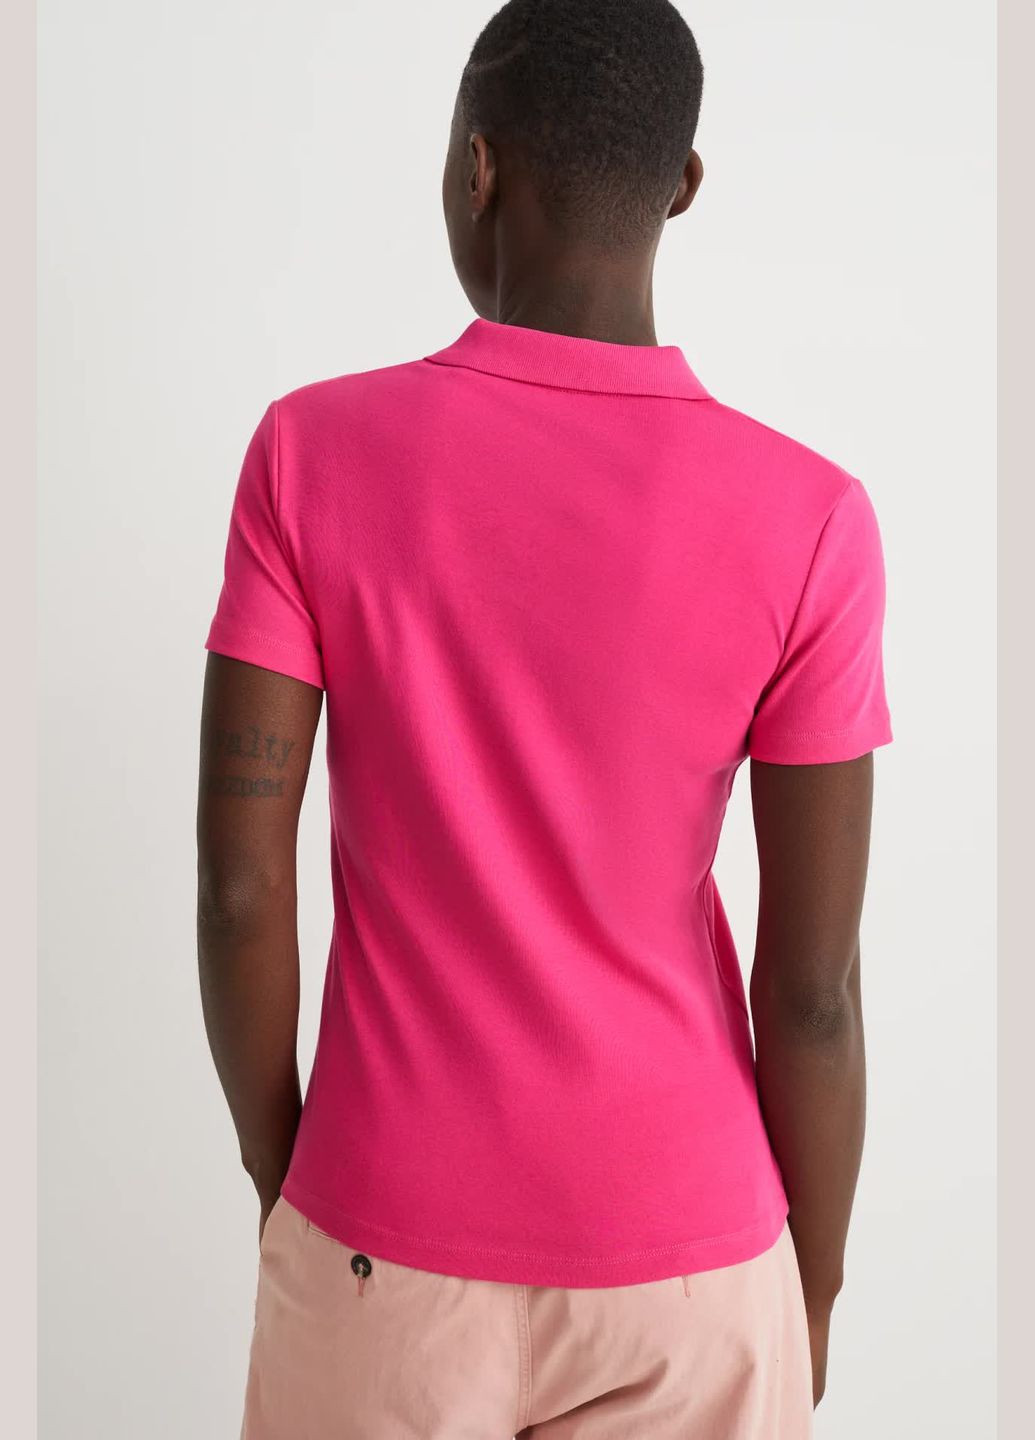 Розовая женская футболка-поло из хлопка C&A однотонная